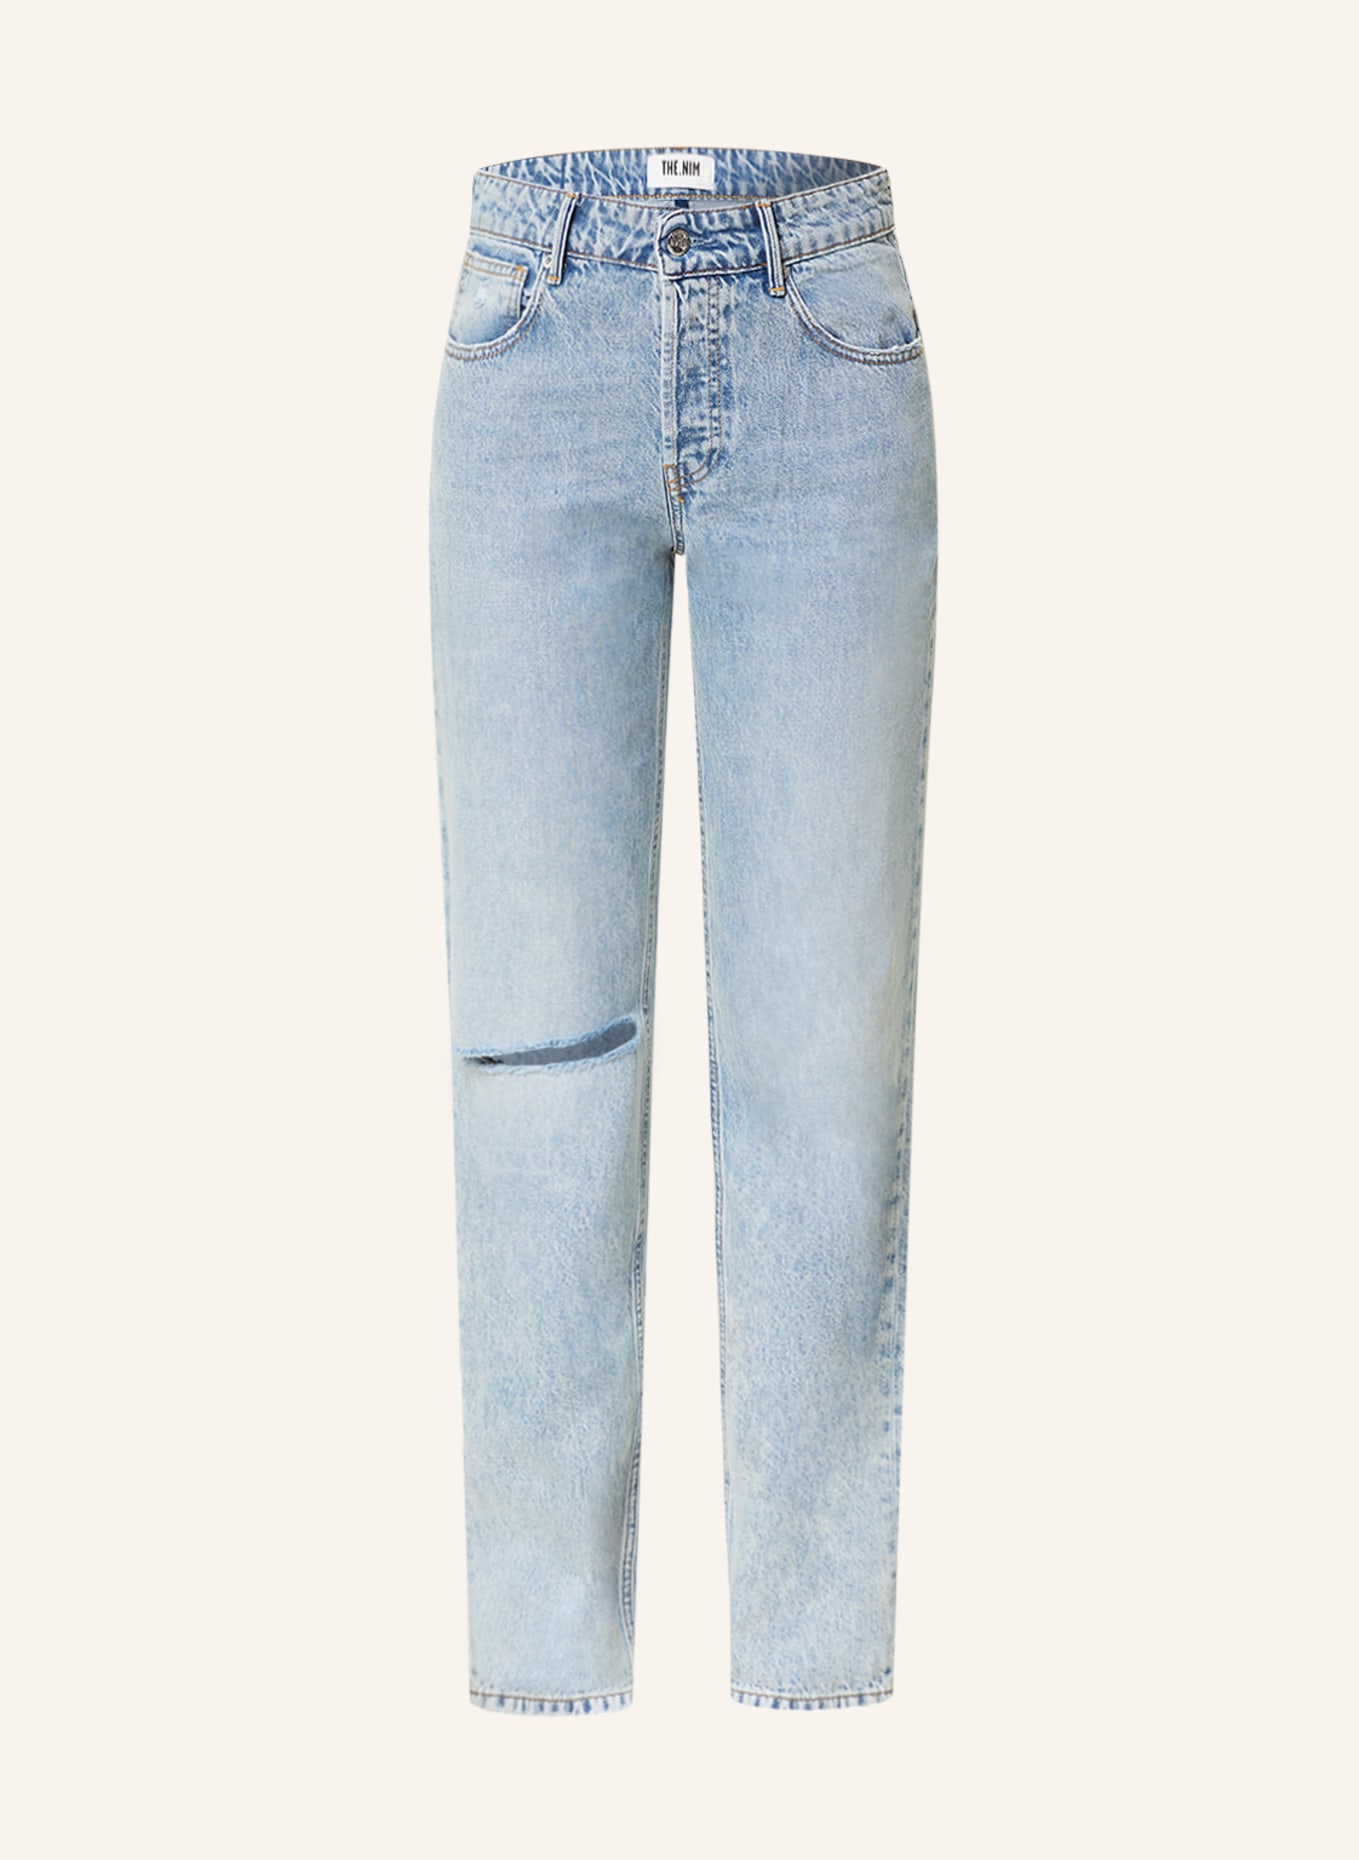 THE.NIM STANDARD Straight jeans JANE, Color: W740-VTL VINTAGE LIGHT (Image 1)